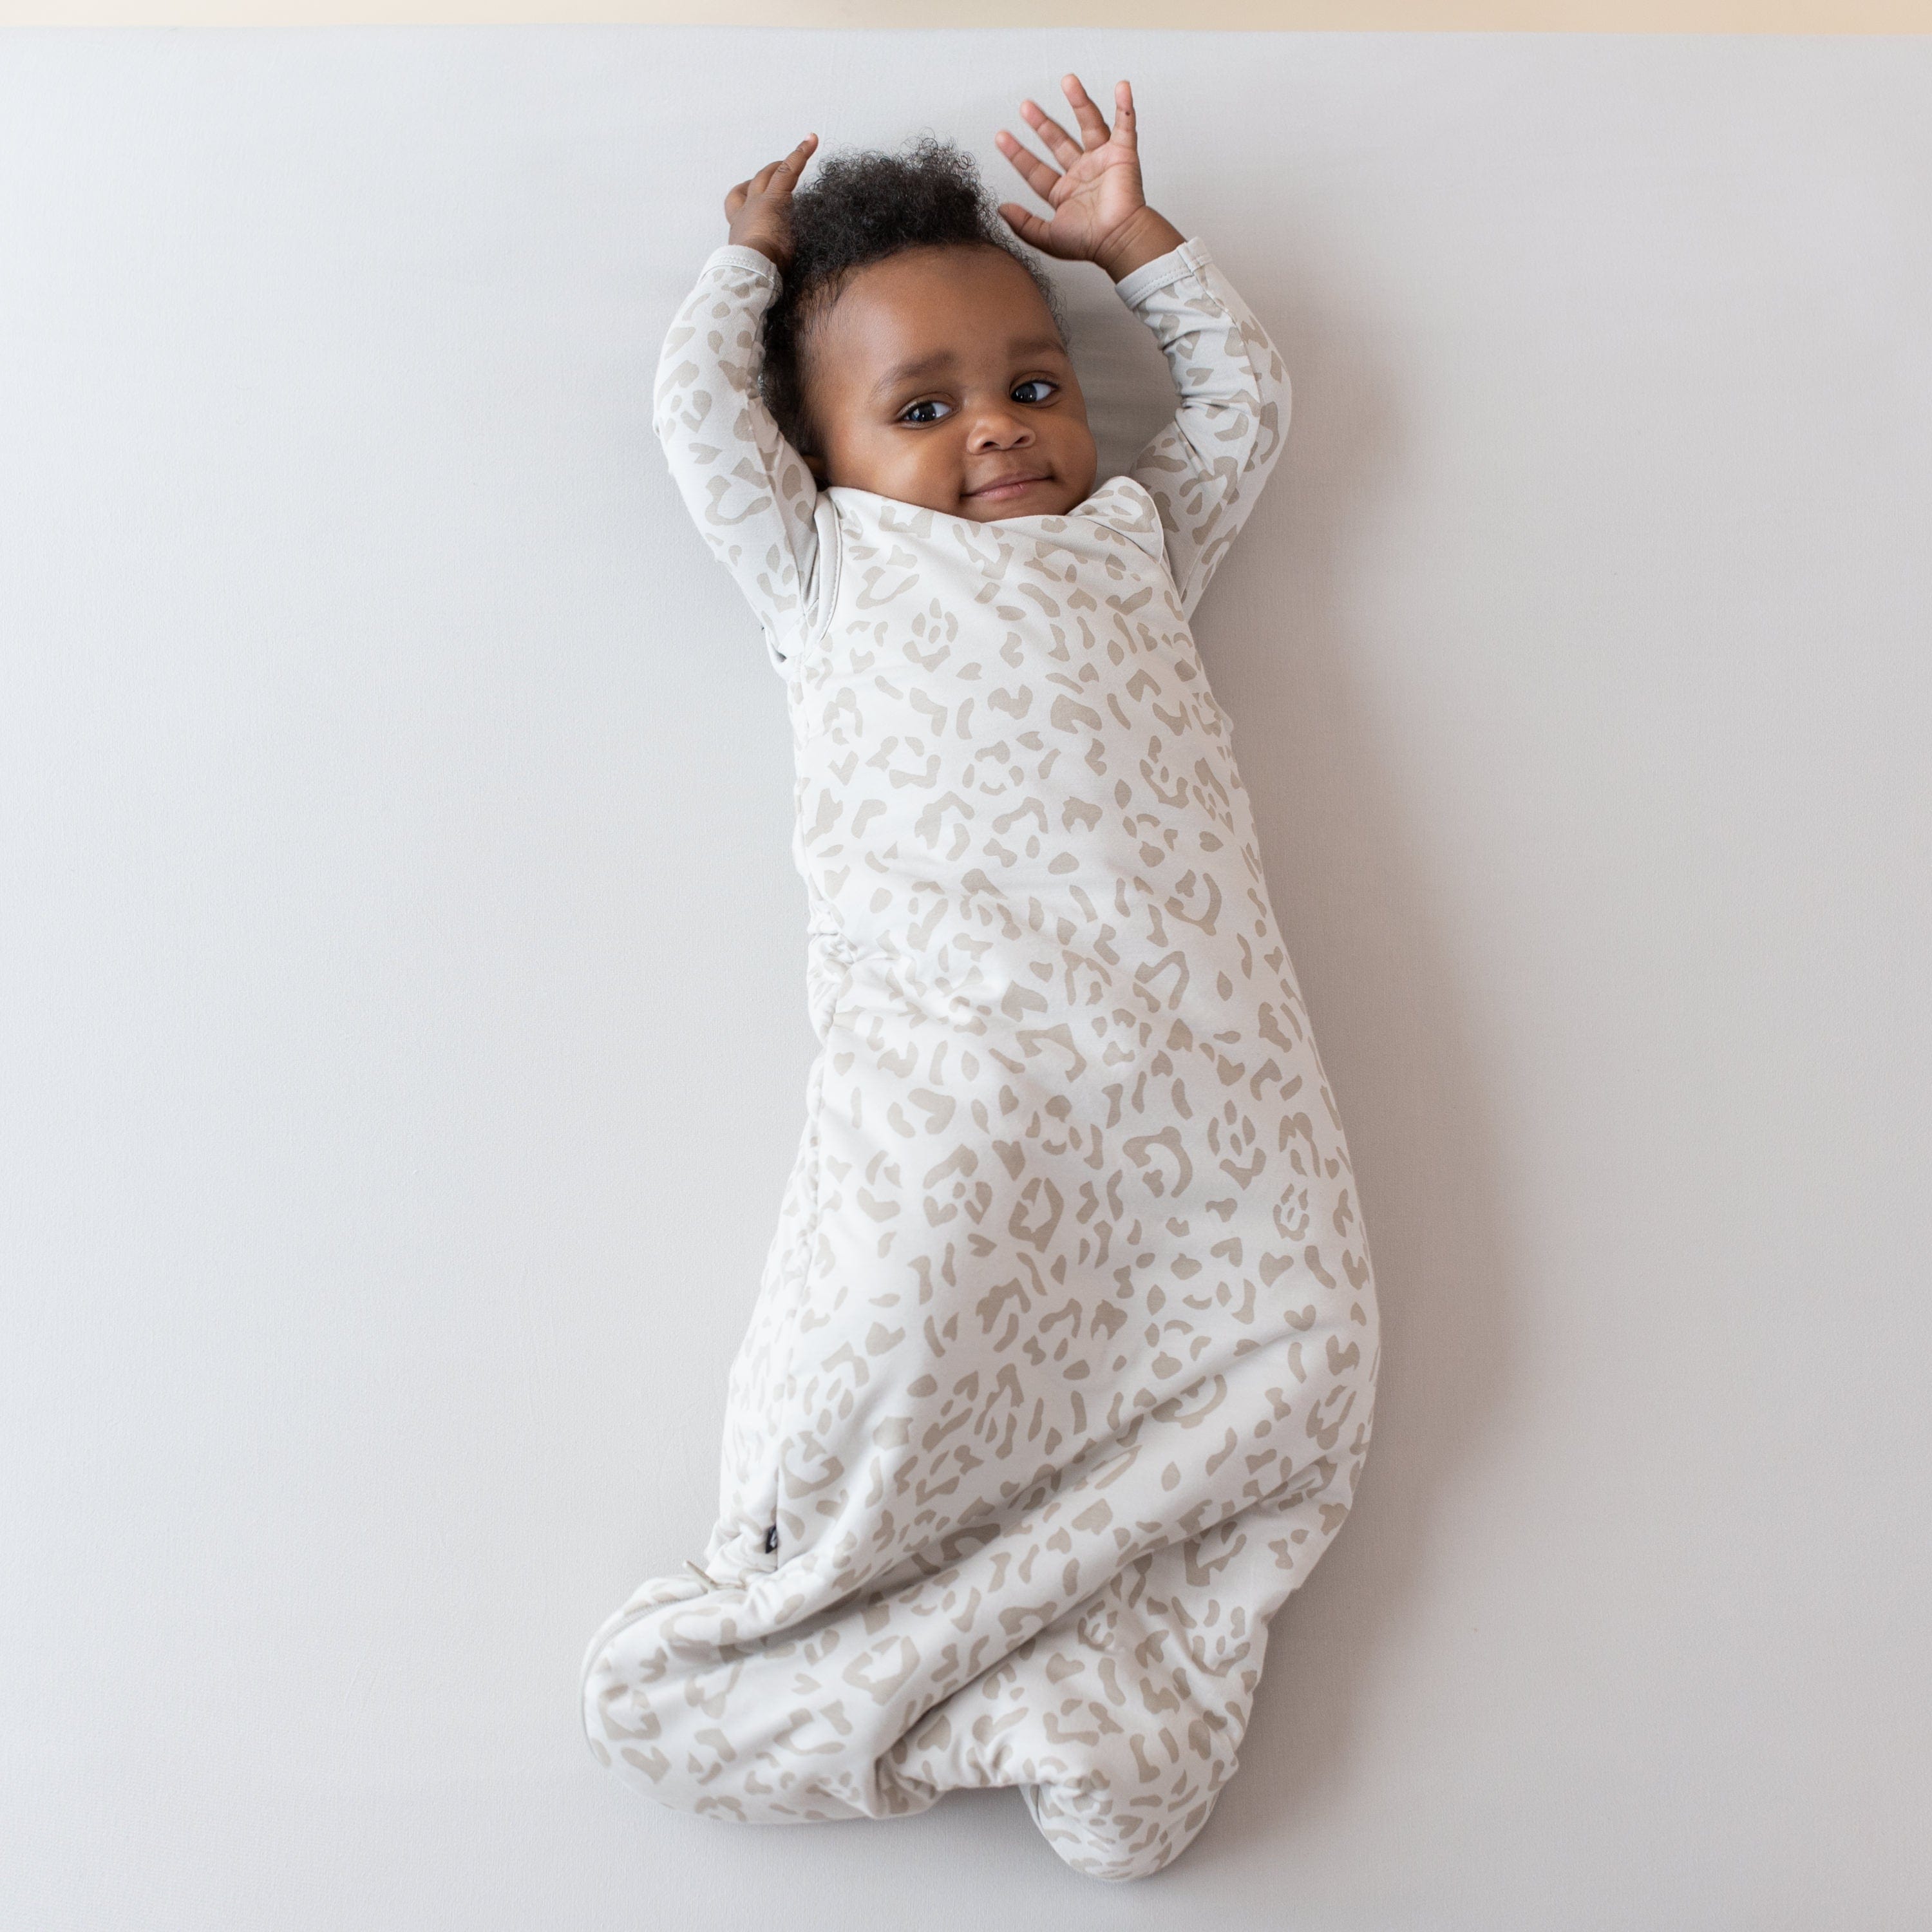 Infant wearing Kyte Baby Sleep Bag in Oat Leopard 1.0